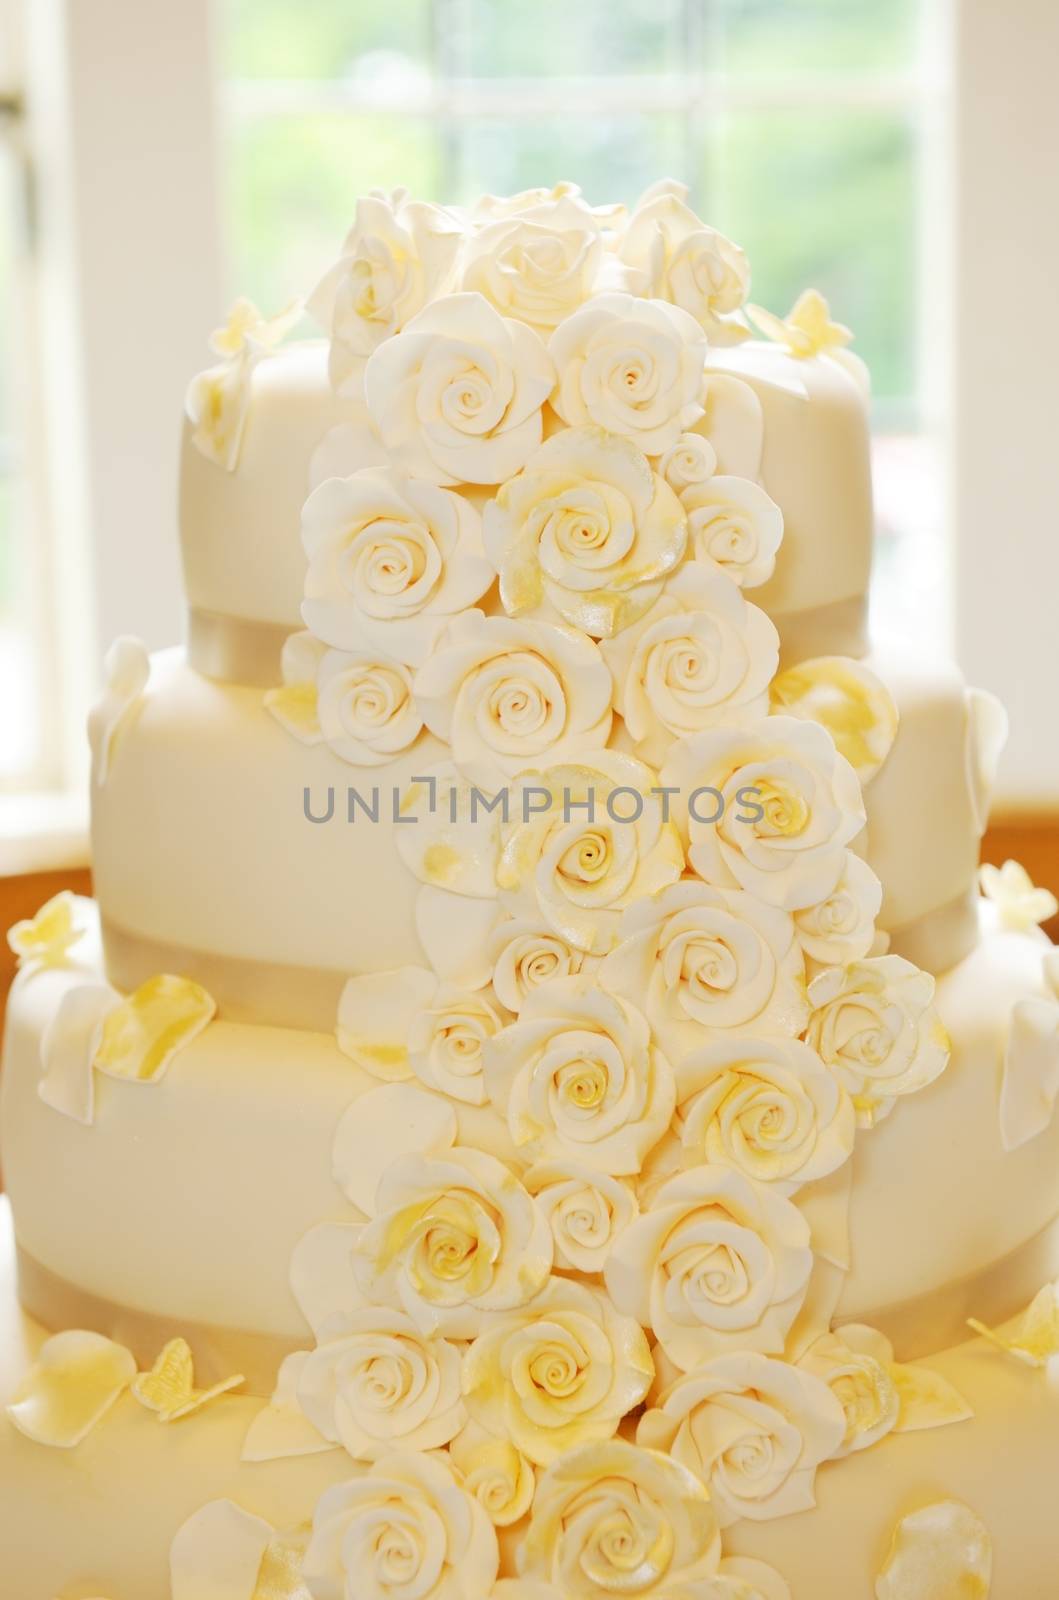 Wedding cake closeup flower details